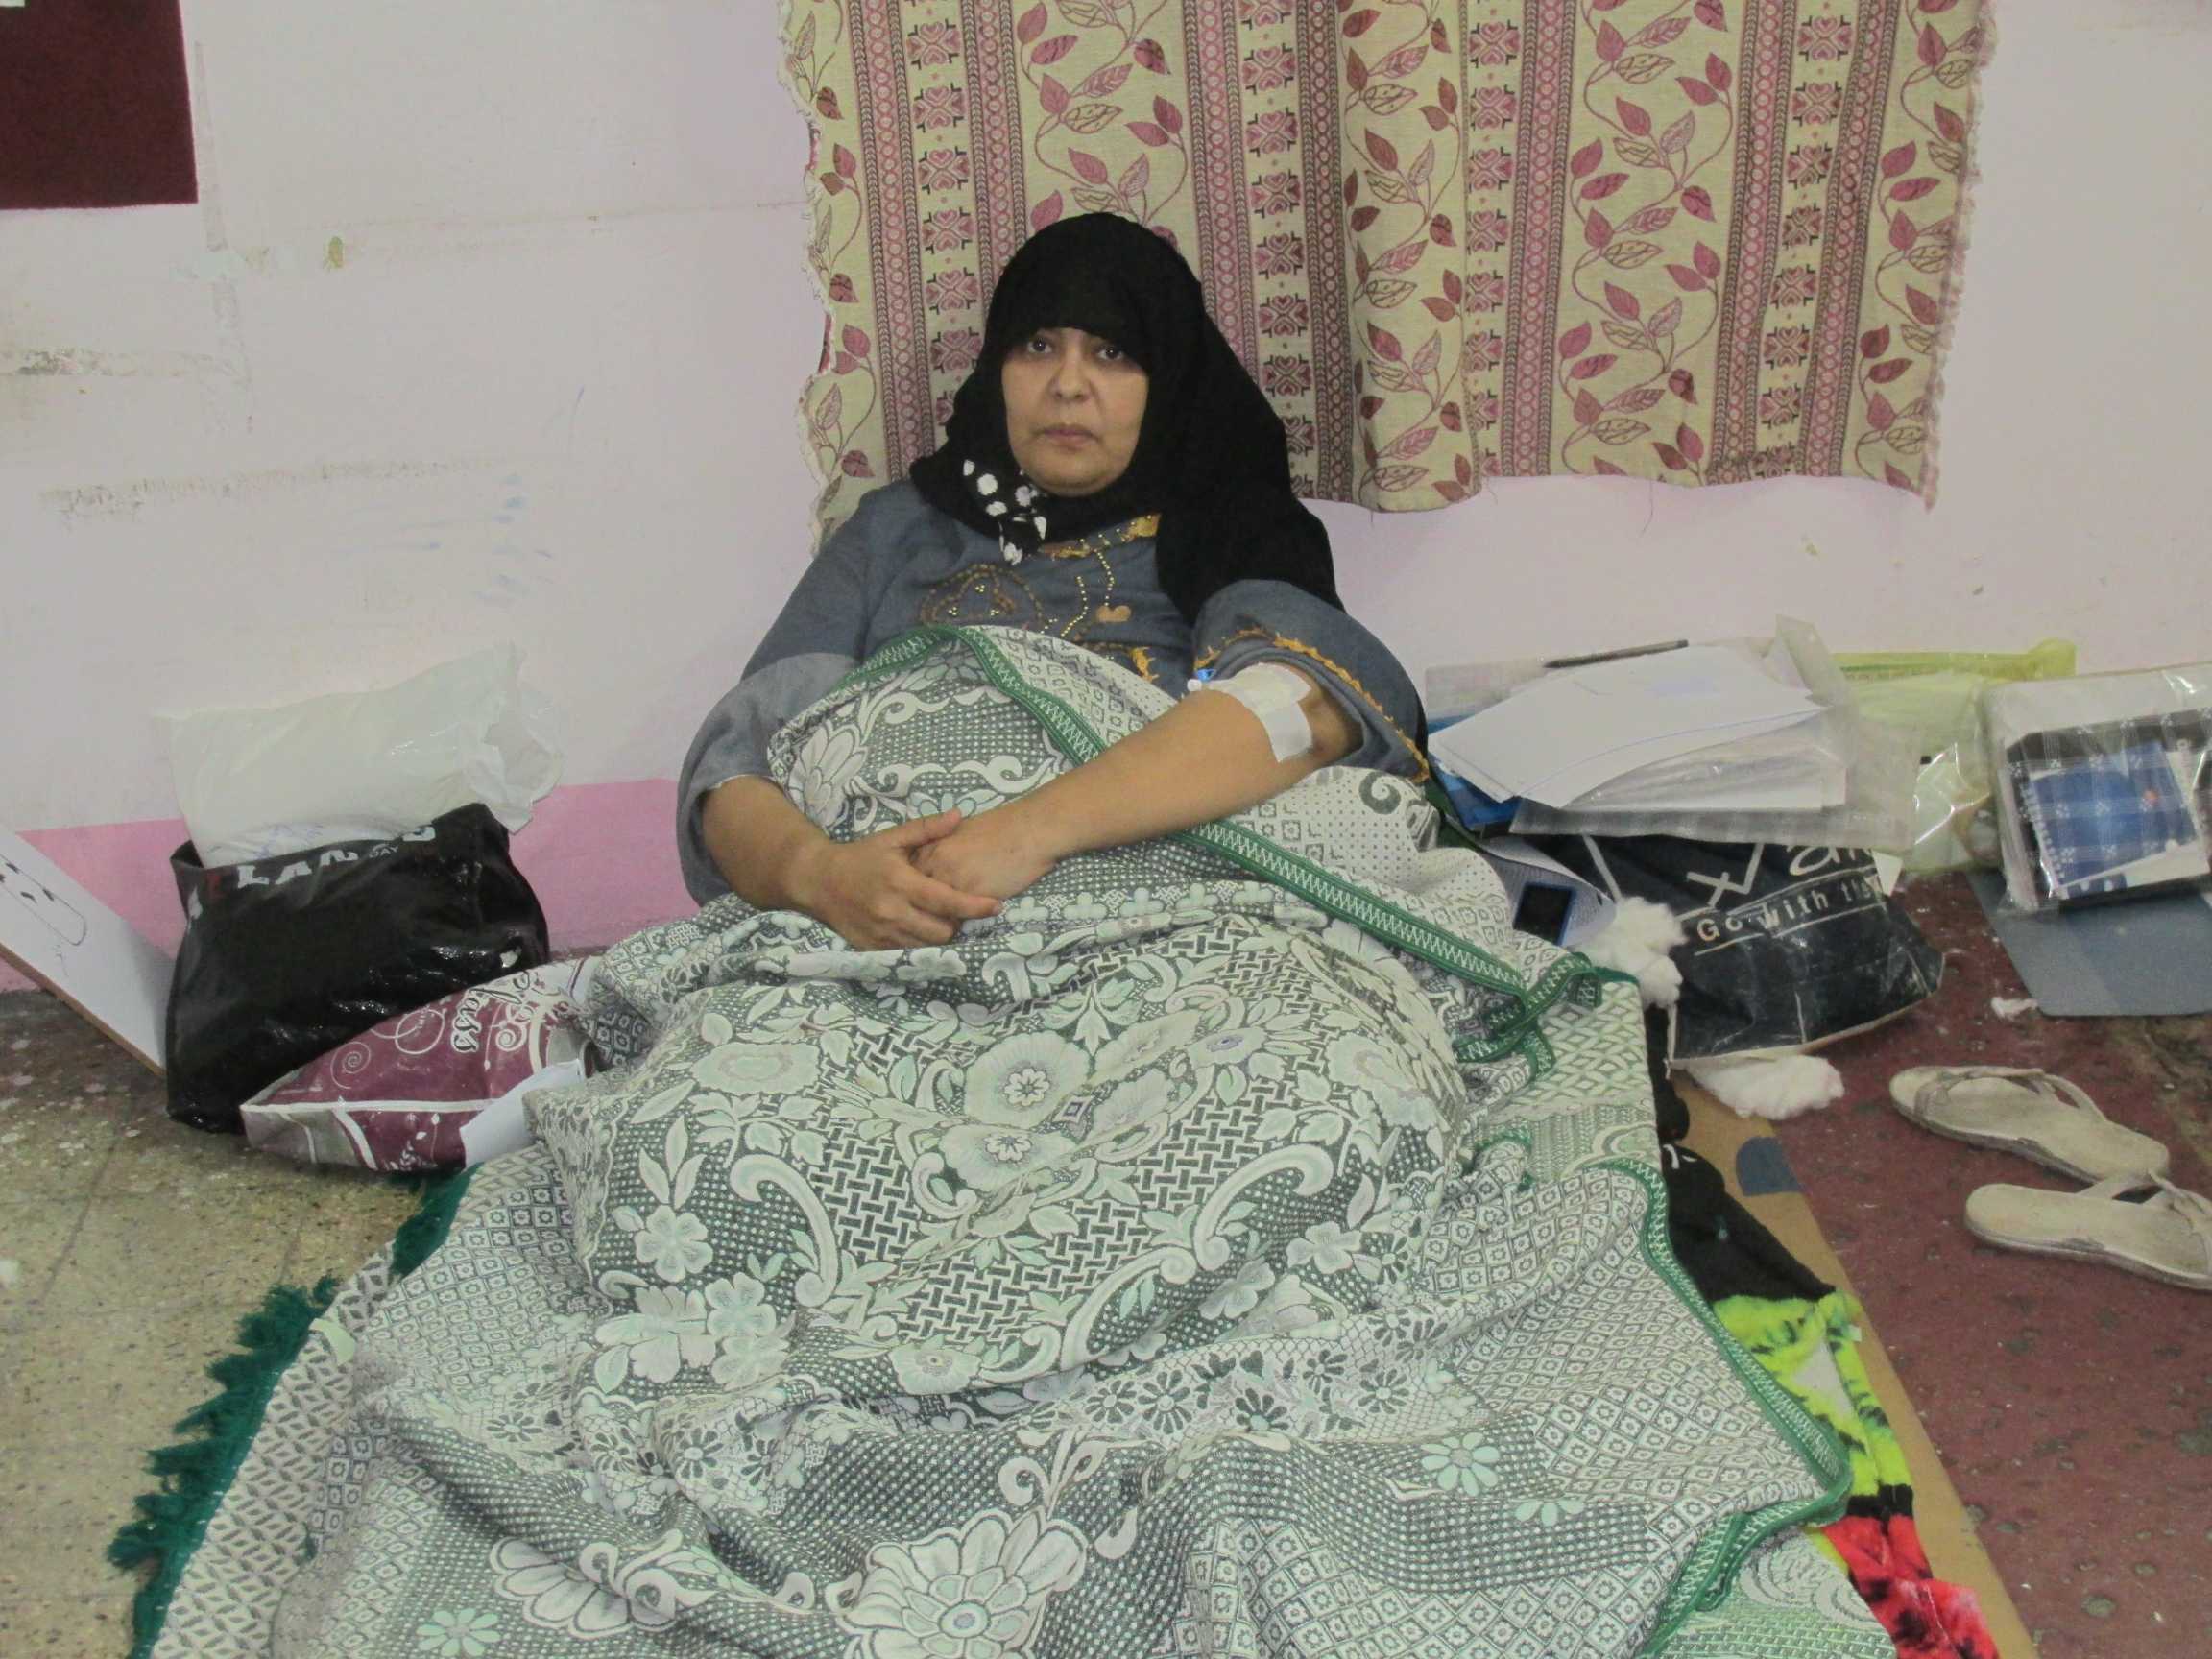 الممرضة المضربة داخل مكتب الصحة والسلامة المهنية بحميات بورسعيد